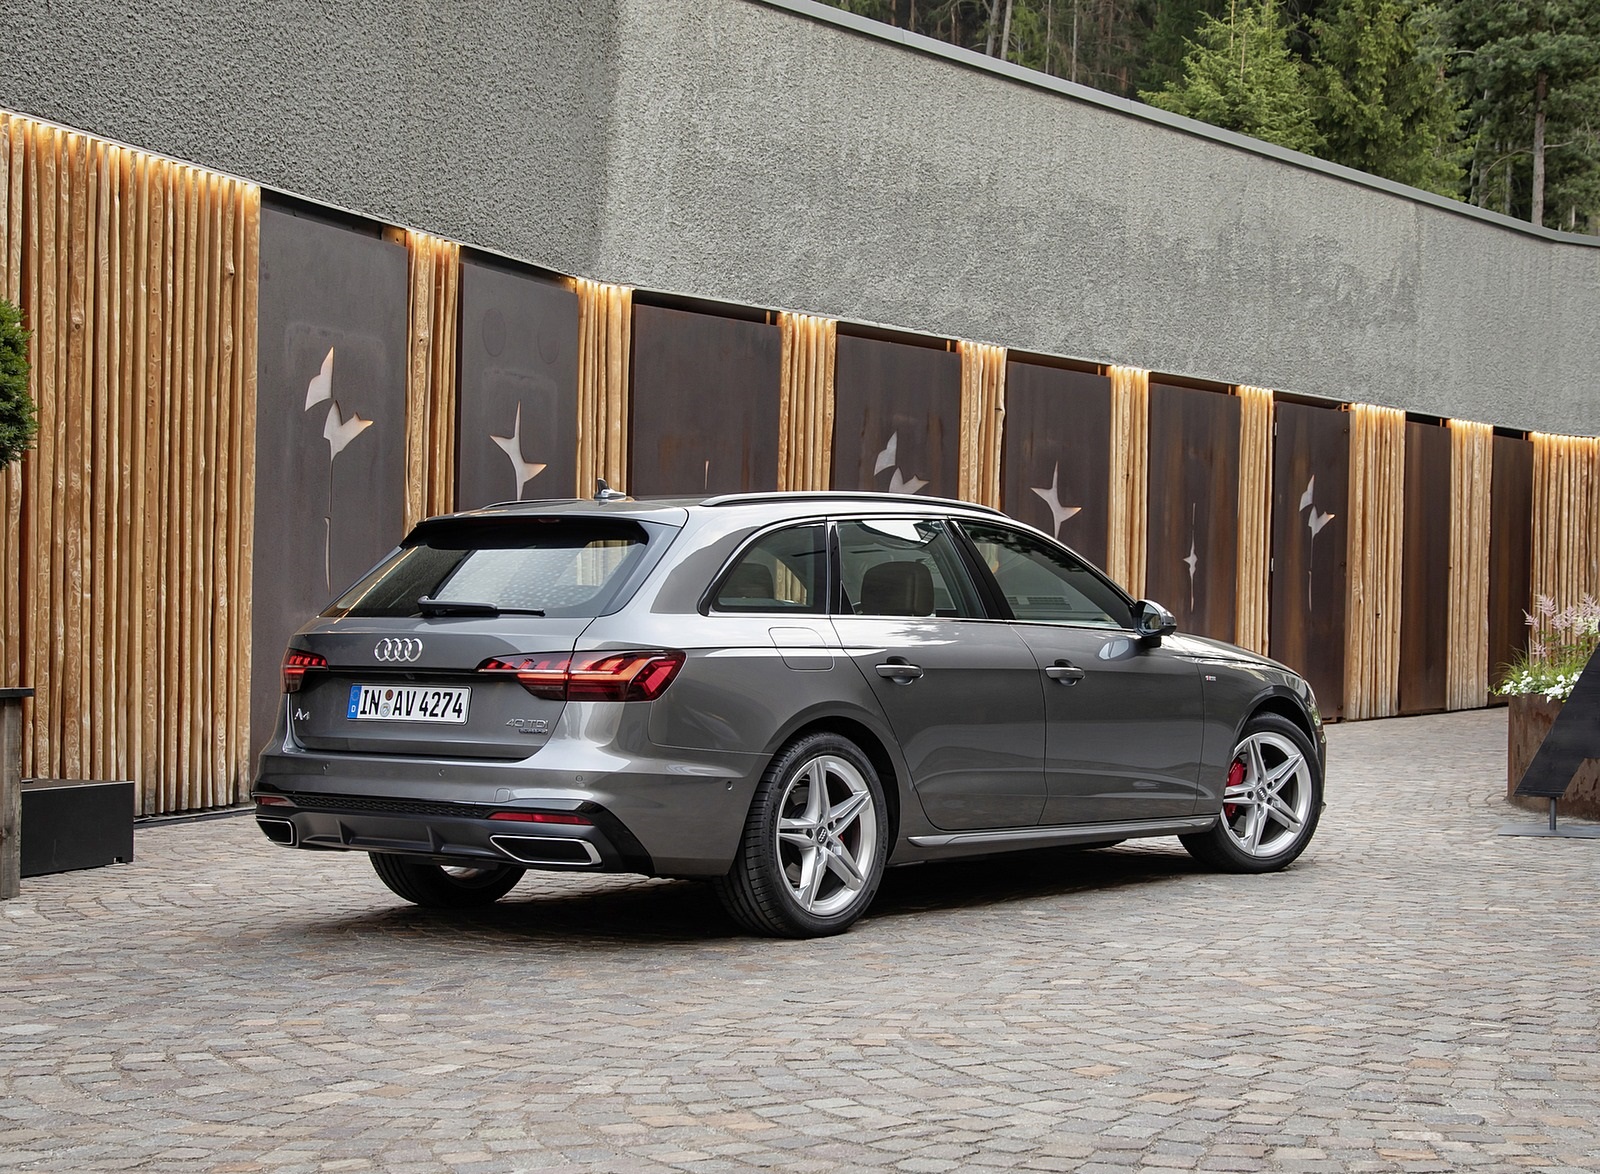 2020 Audi A4 Avant (Color: Terra Gray) Rear Three-Quarter Wallpapers #14 of 61